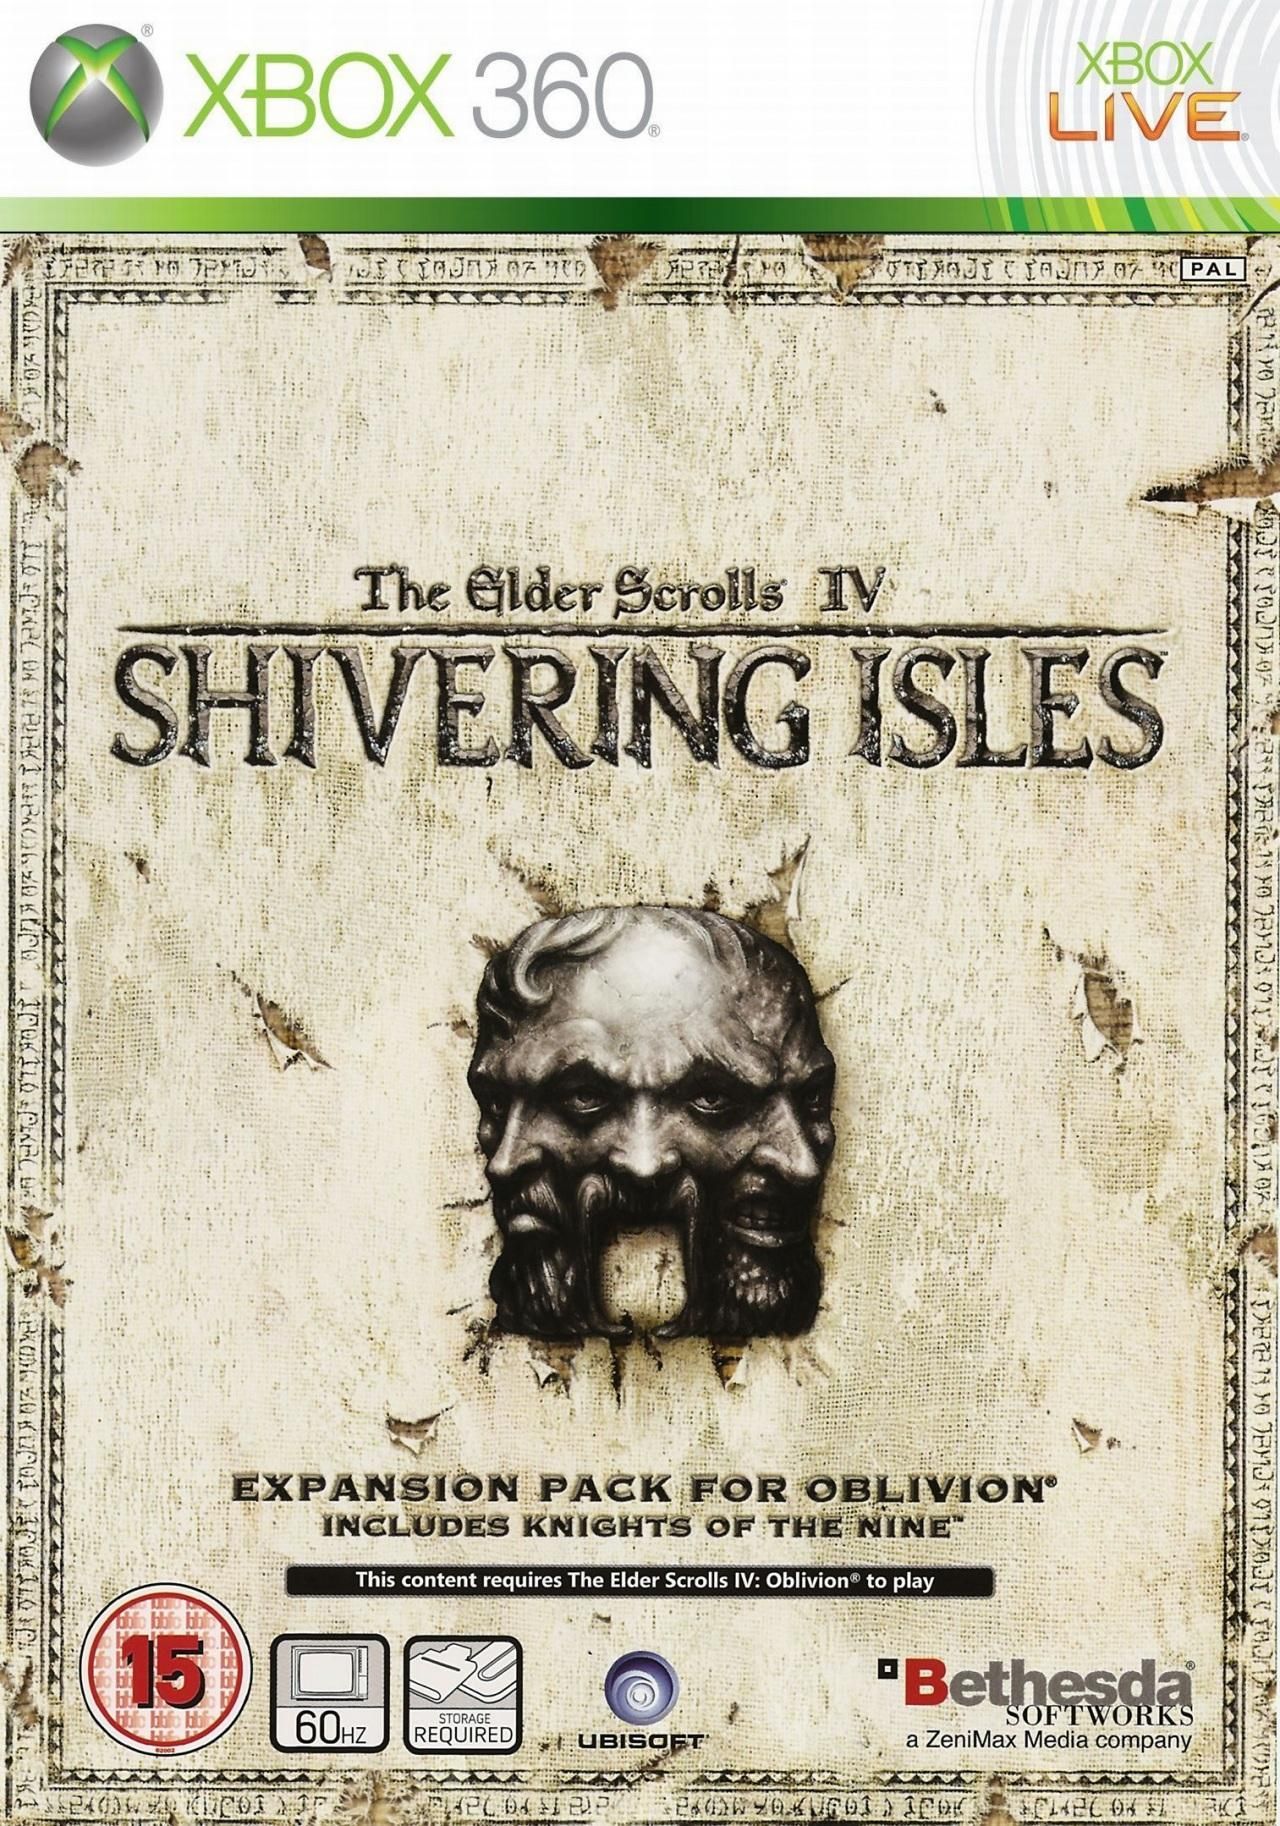 Mitones sacerdote Productividad The Elder Scrolls IV: Oblivion - Shivering Isles - Videojuego (Xbox 360 y  PC) - Vandal